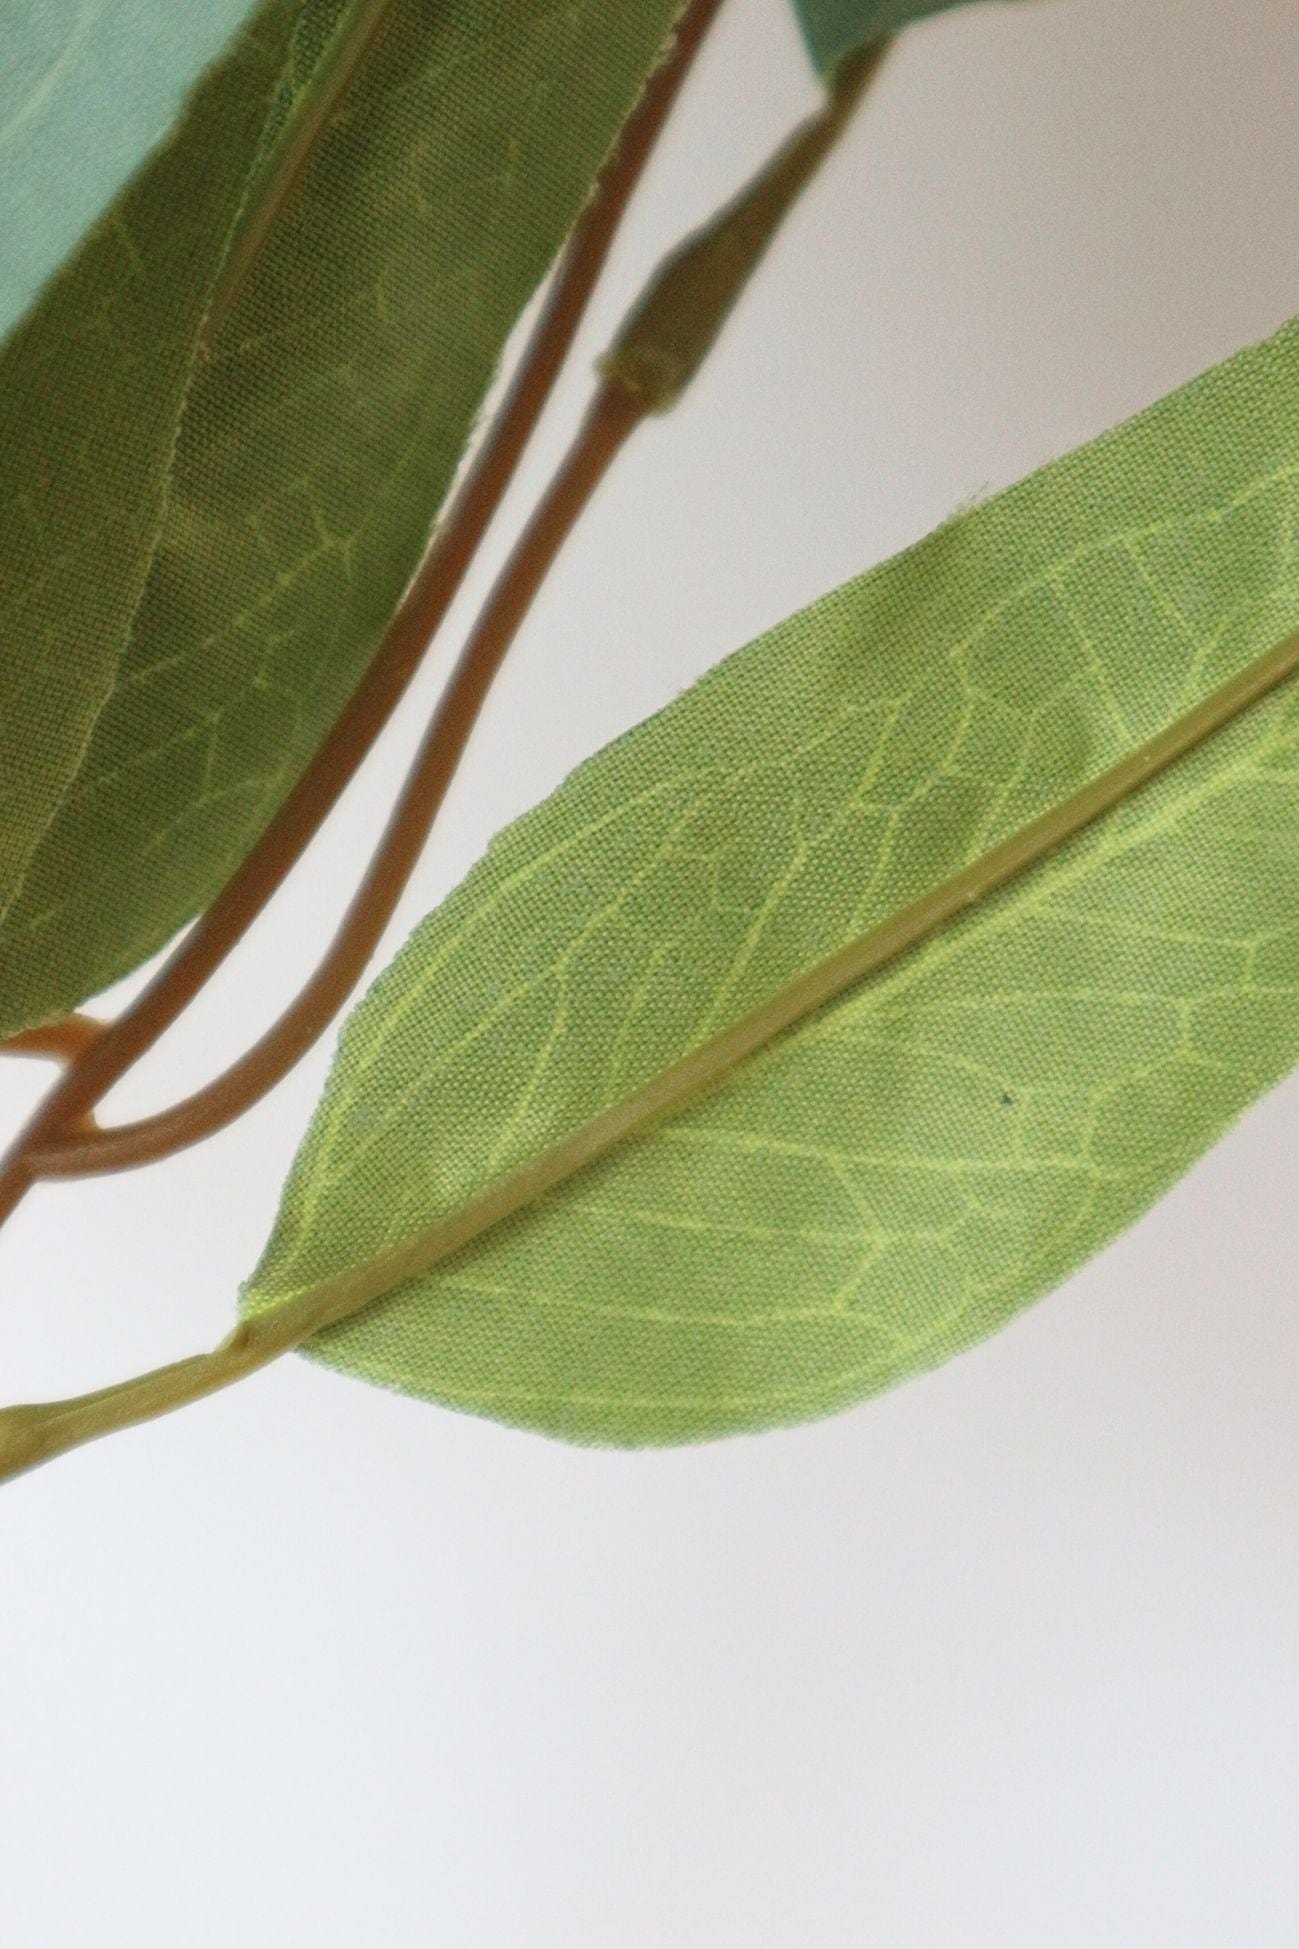 Item International Edie Edie - Rametto di foglie artificiali | Item International